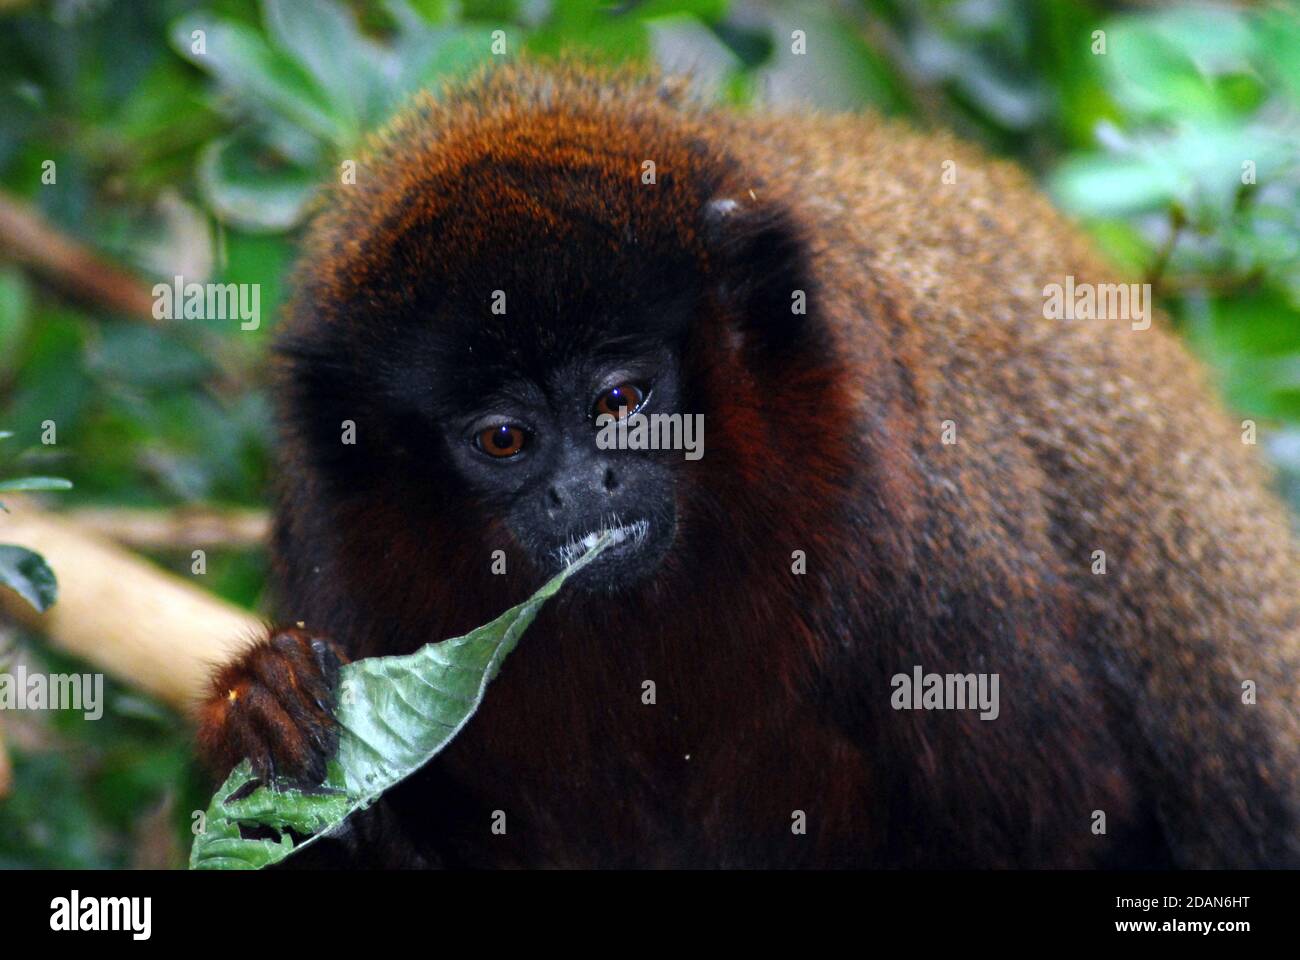 La scimmia rossa di Titi conosciuta anche come titi coppery (Plecturocebus cutreus anche Callicebus cutreus) un tipo di primate del nuovo mondo in via di estinzione dal Sud America. Foto Stock